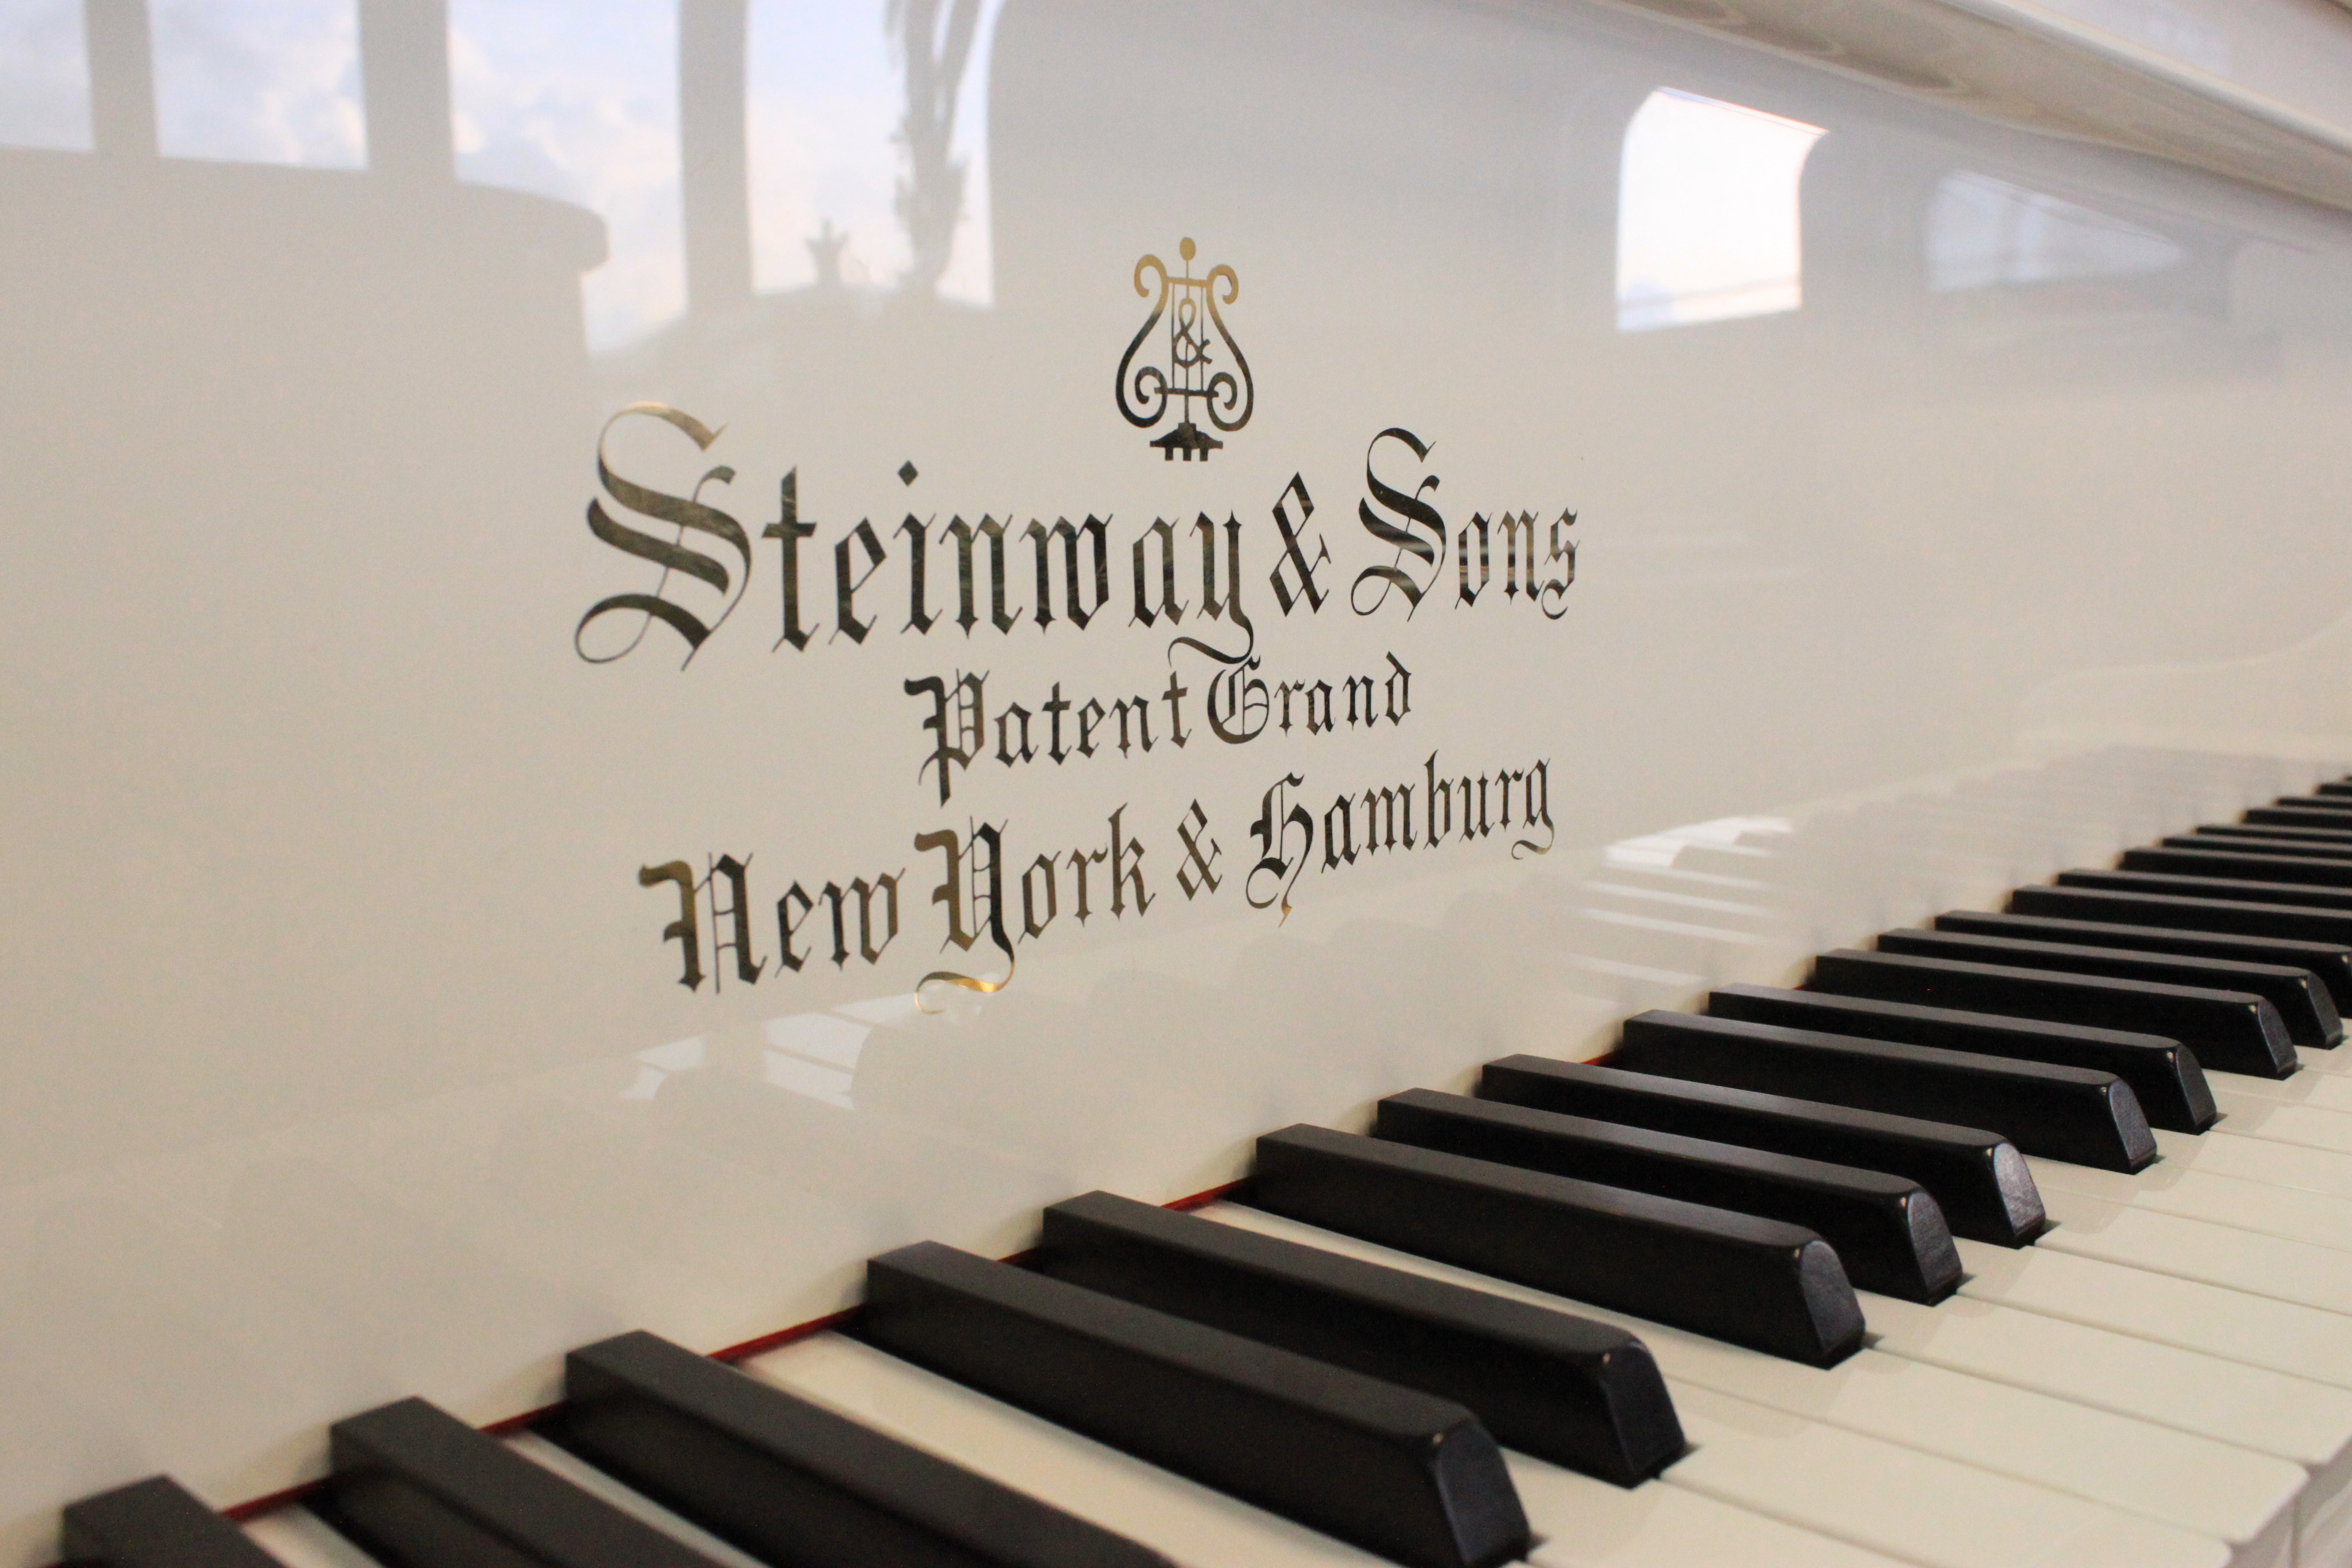 Steinway & Sons, патентованный рояль, Нью-Йорк и Гамбург